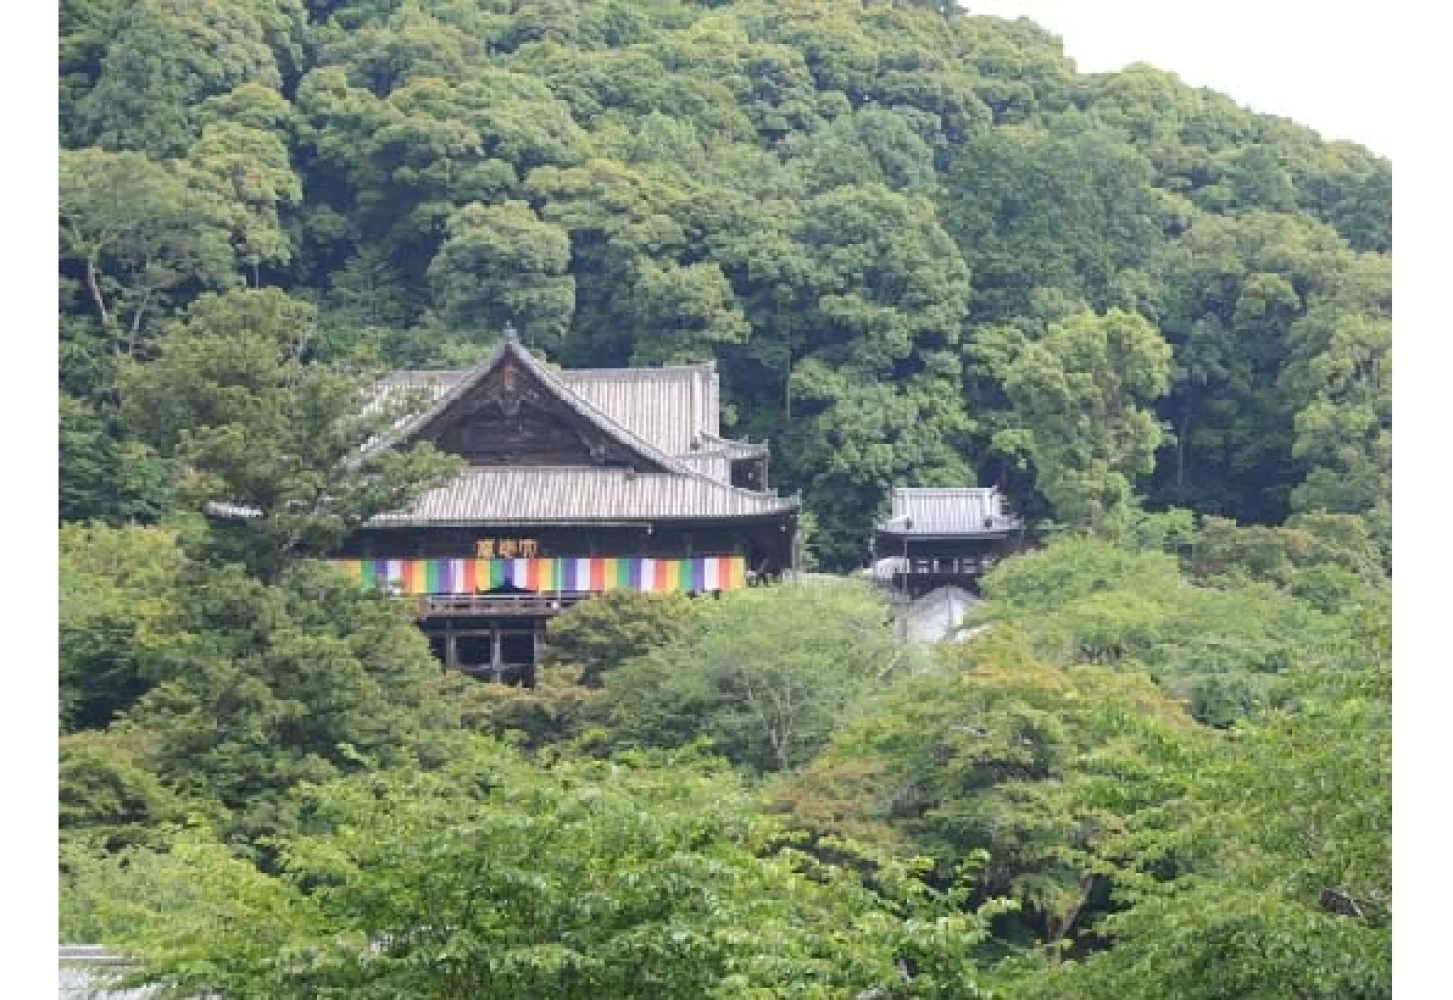 山の木々に囲まれた壮麗な雰囲気の寺院